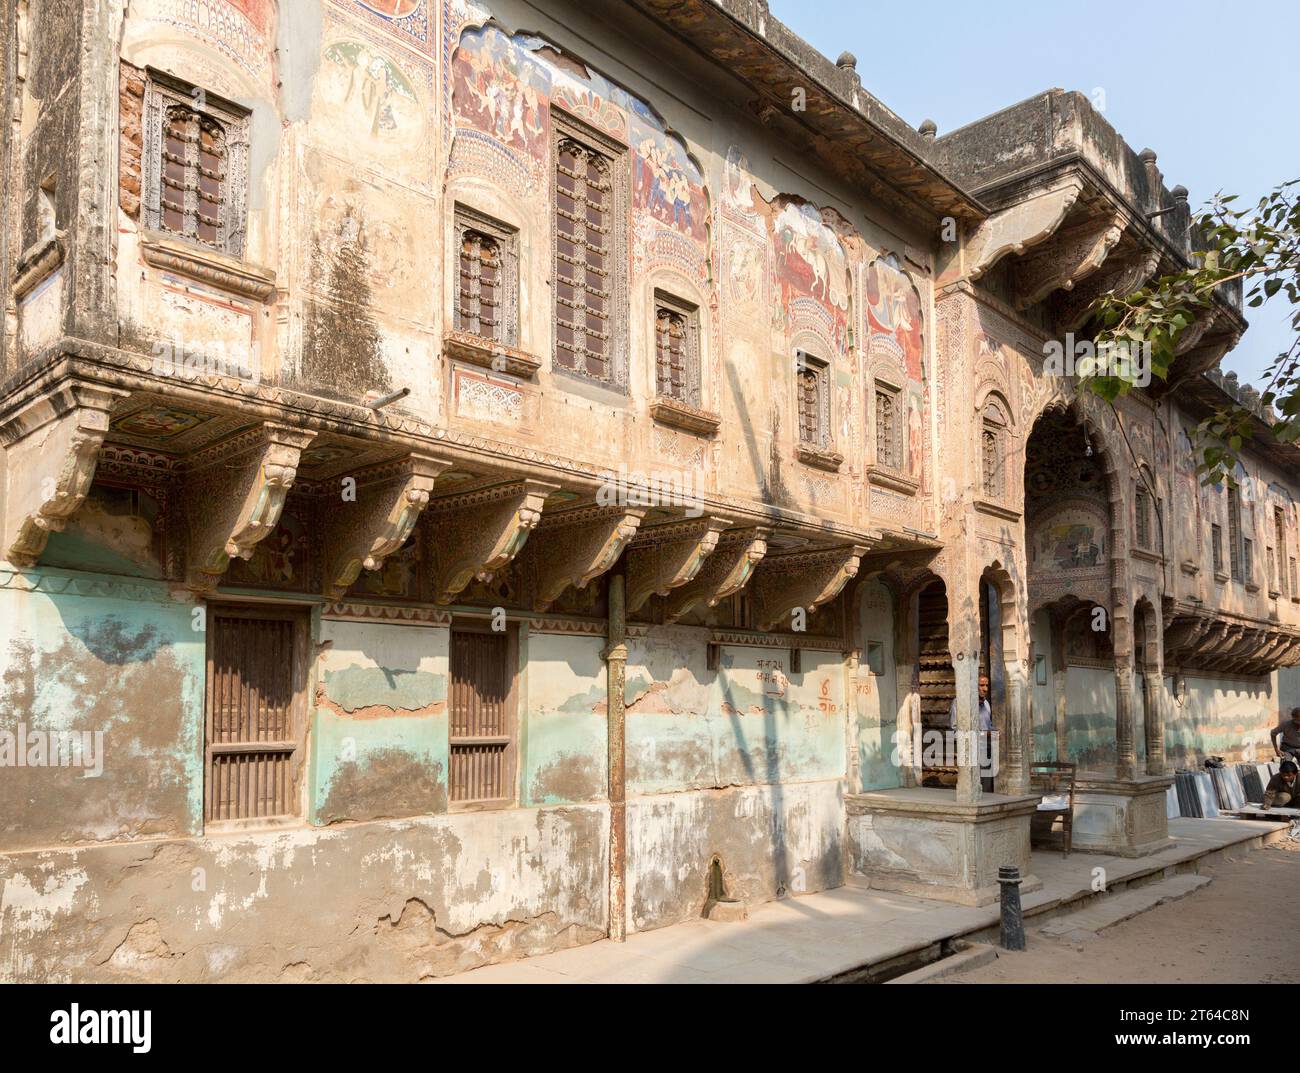 Bansidhar Bhagat Haveli, Nawalgarh, Rajasthan, Indien. ALS Haveli werden die palastartig ausgestalteten Wohnhäuser wohlhabender – meist muslimischer – Foto Stock